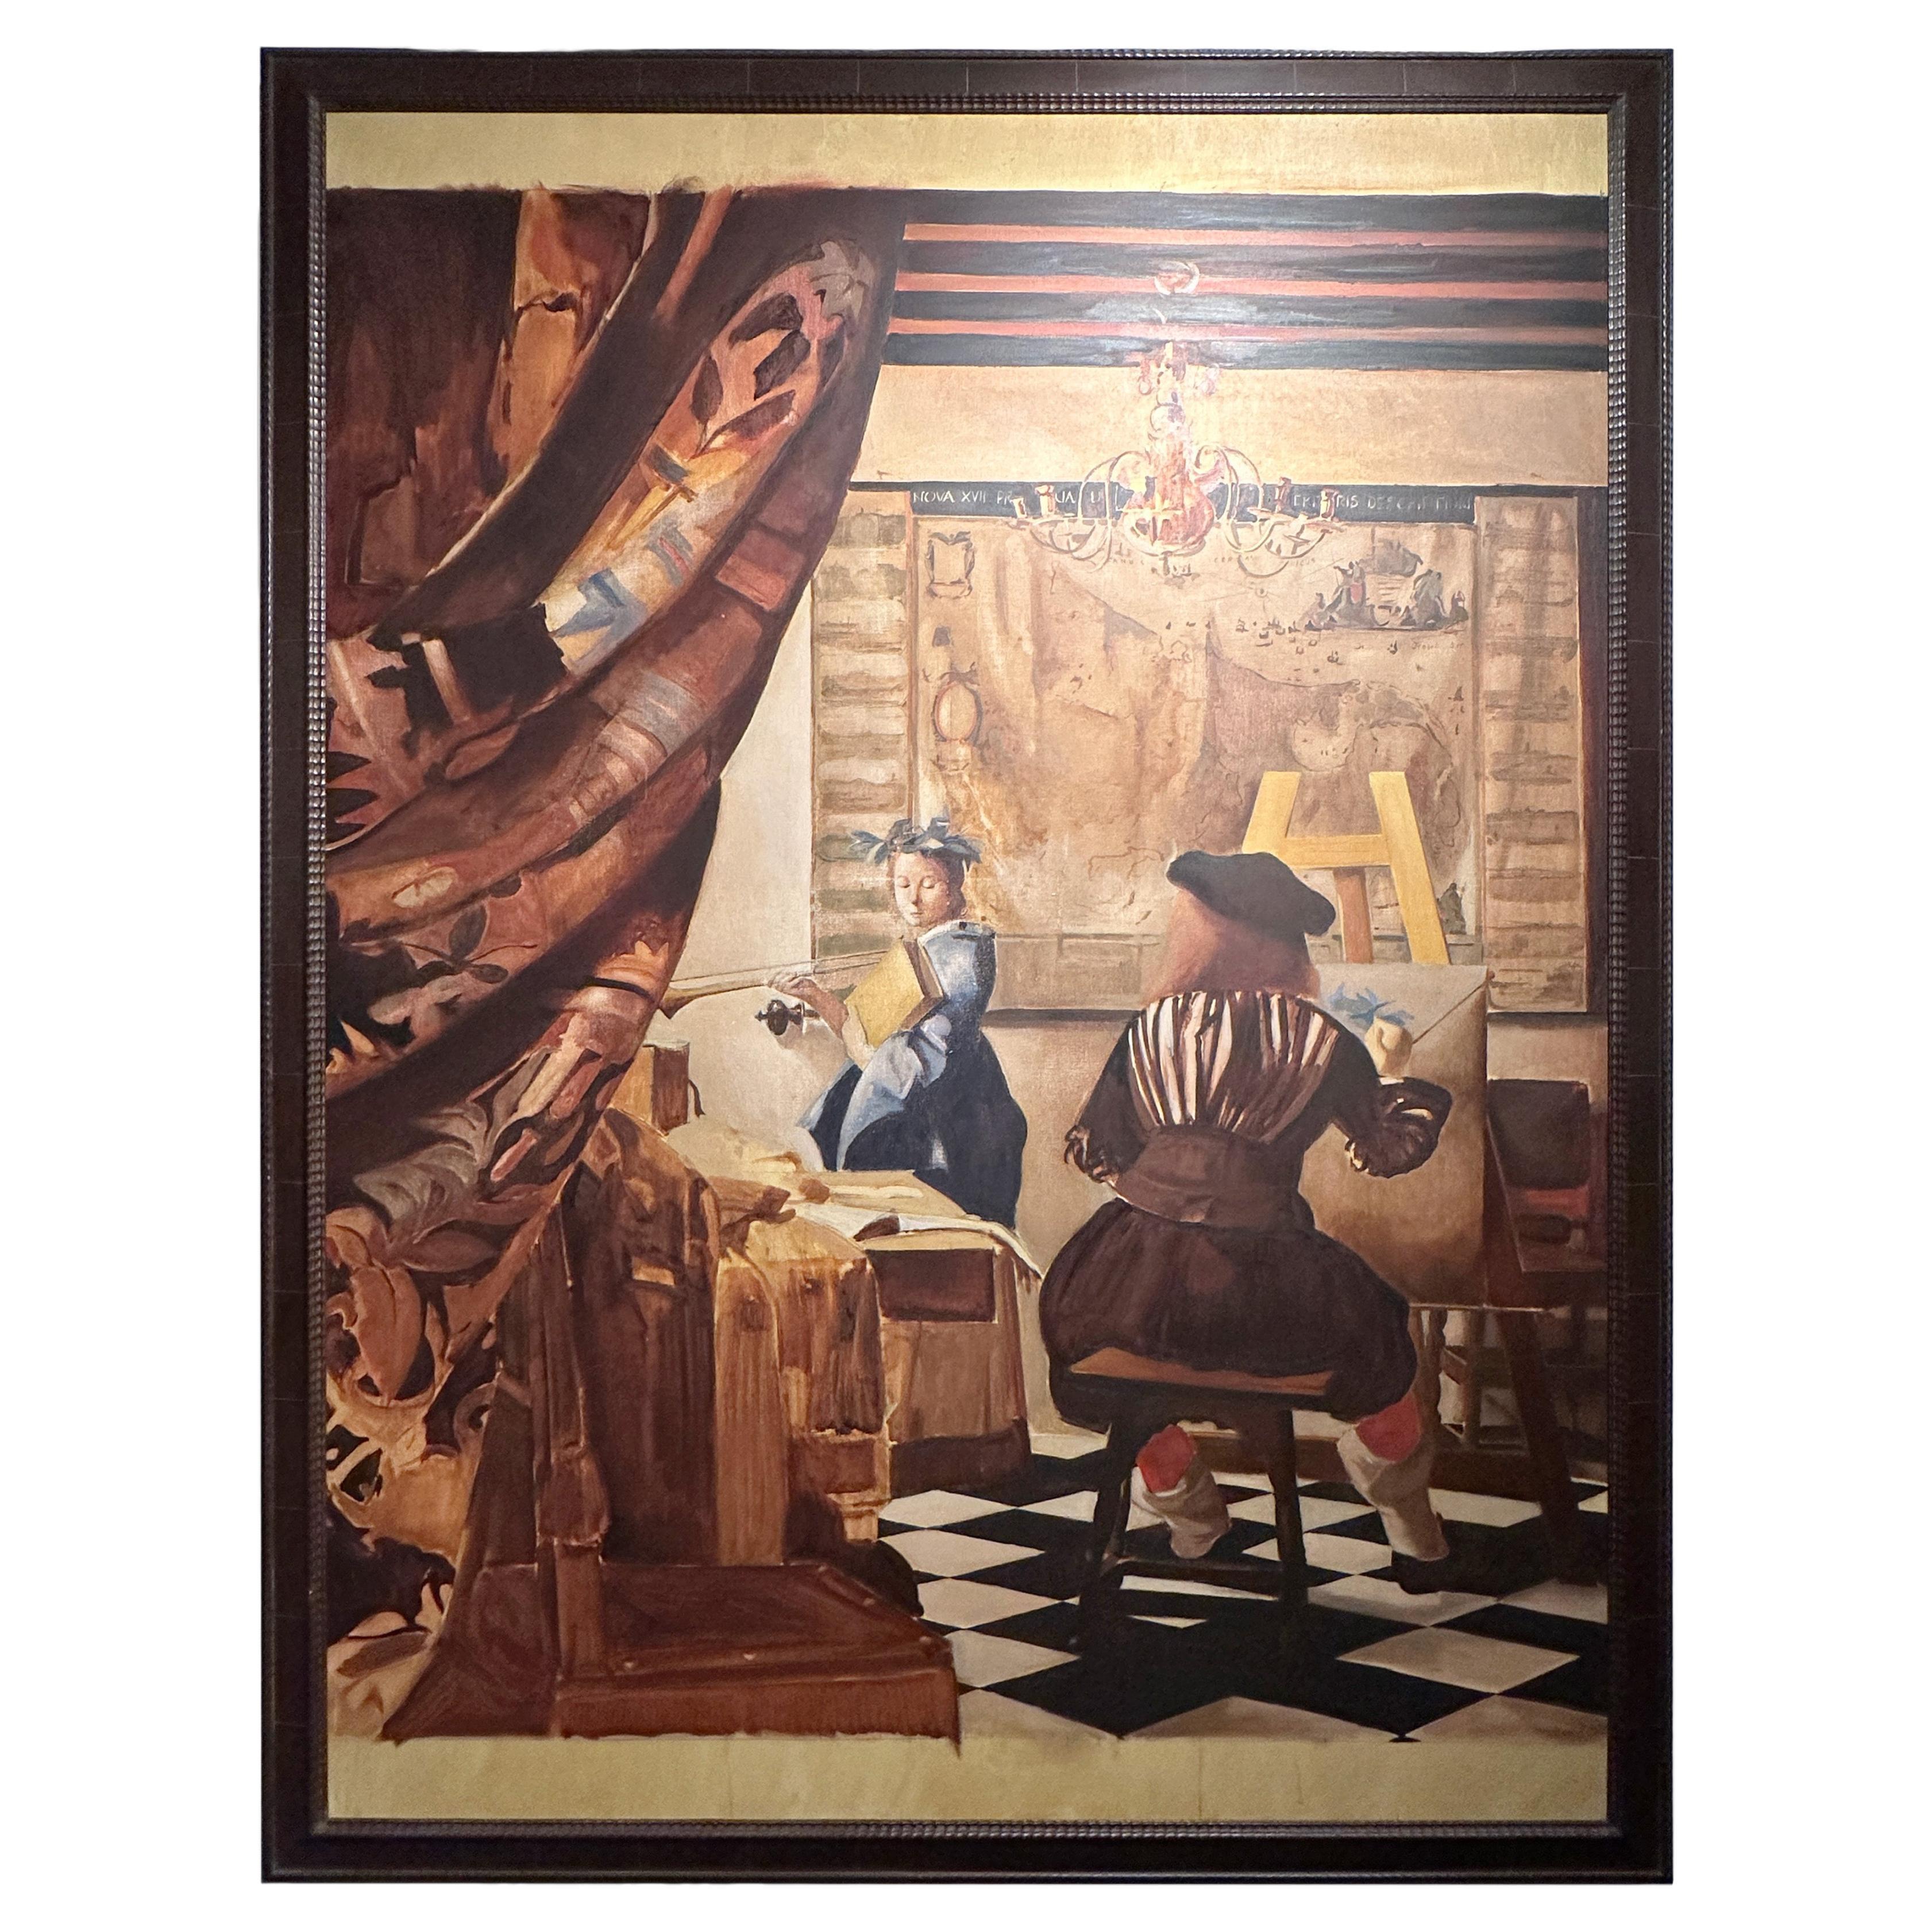 Santiago Uribe Holguin Painting "El Gran Vermeer", 1996-97 For Sale